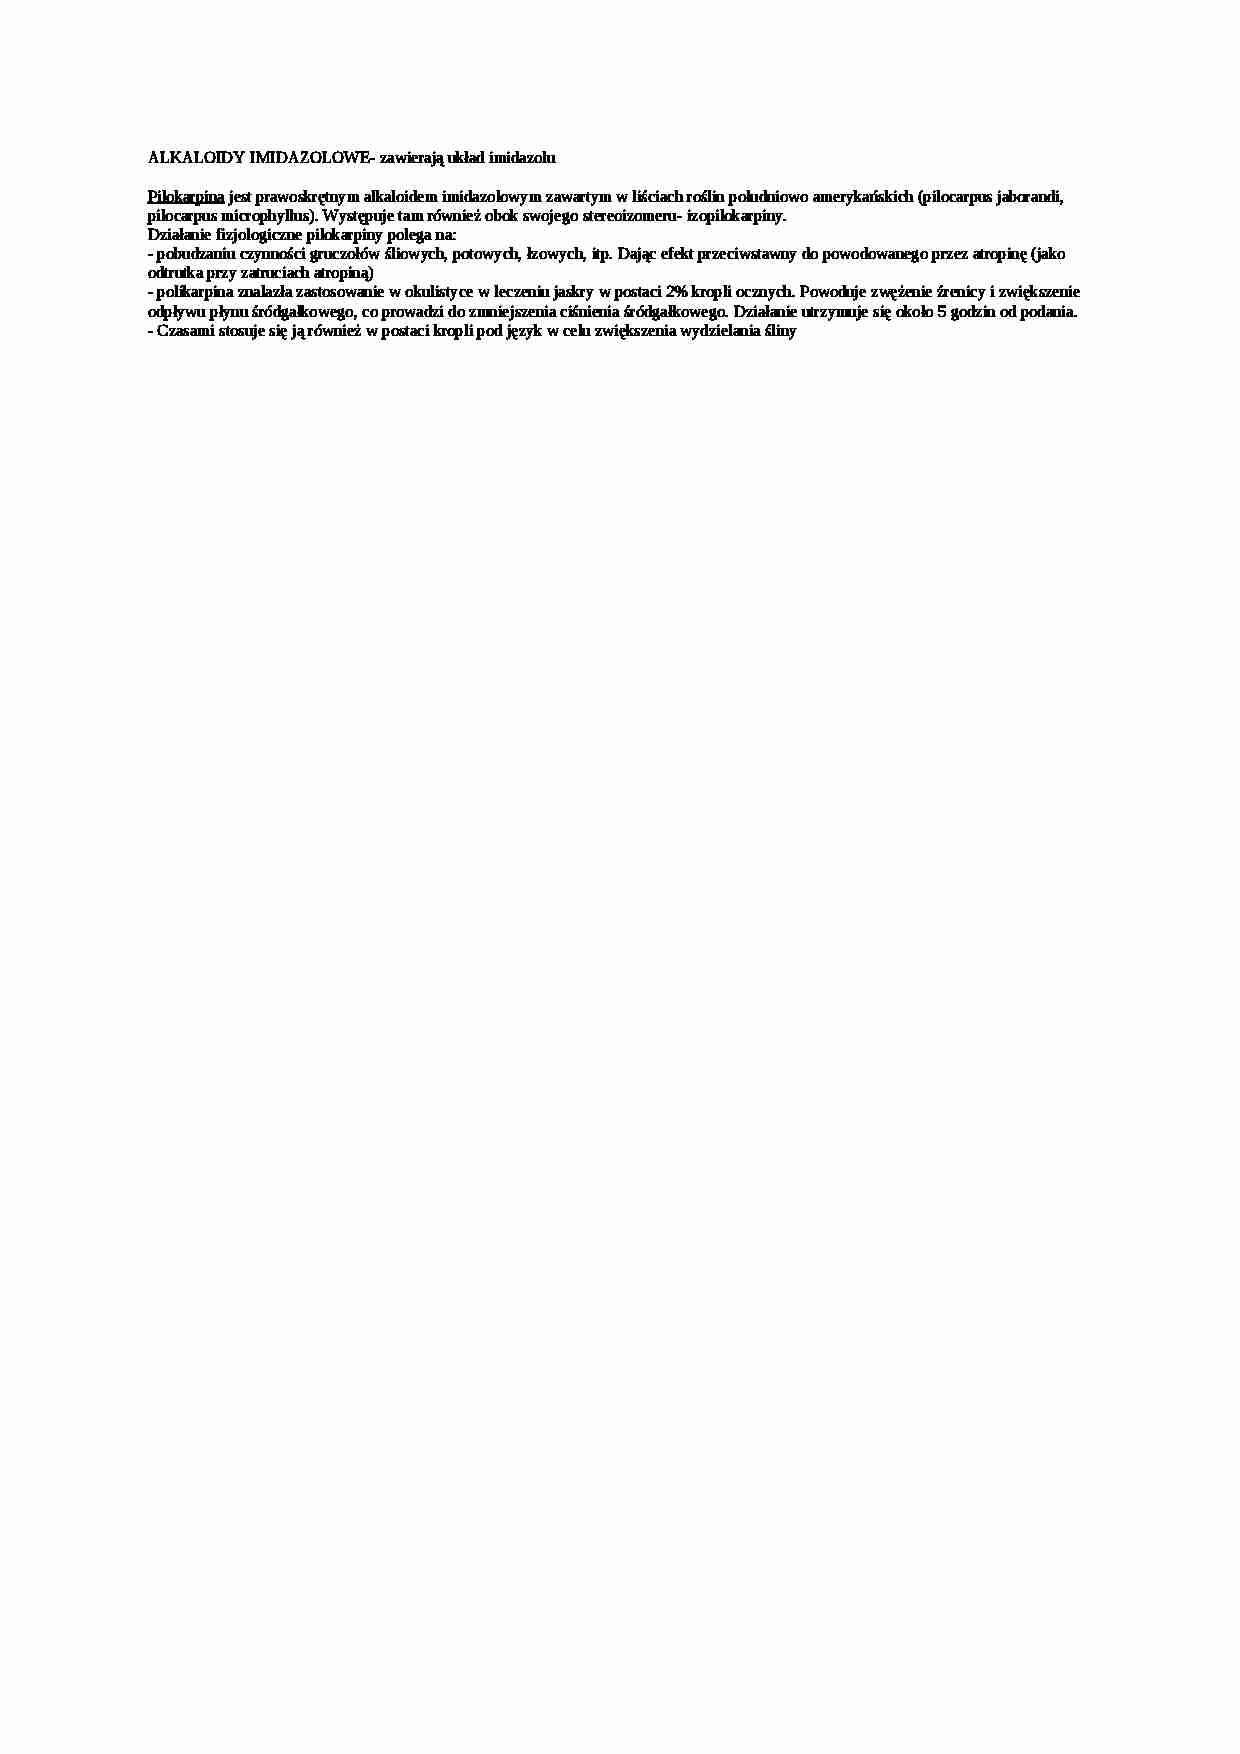 Opracowanie - alkaloidy imidazolowe - strona 1